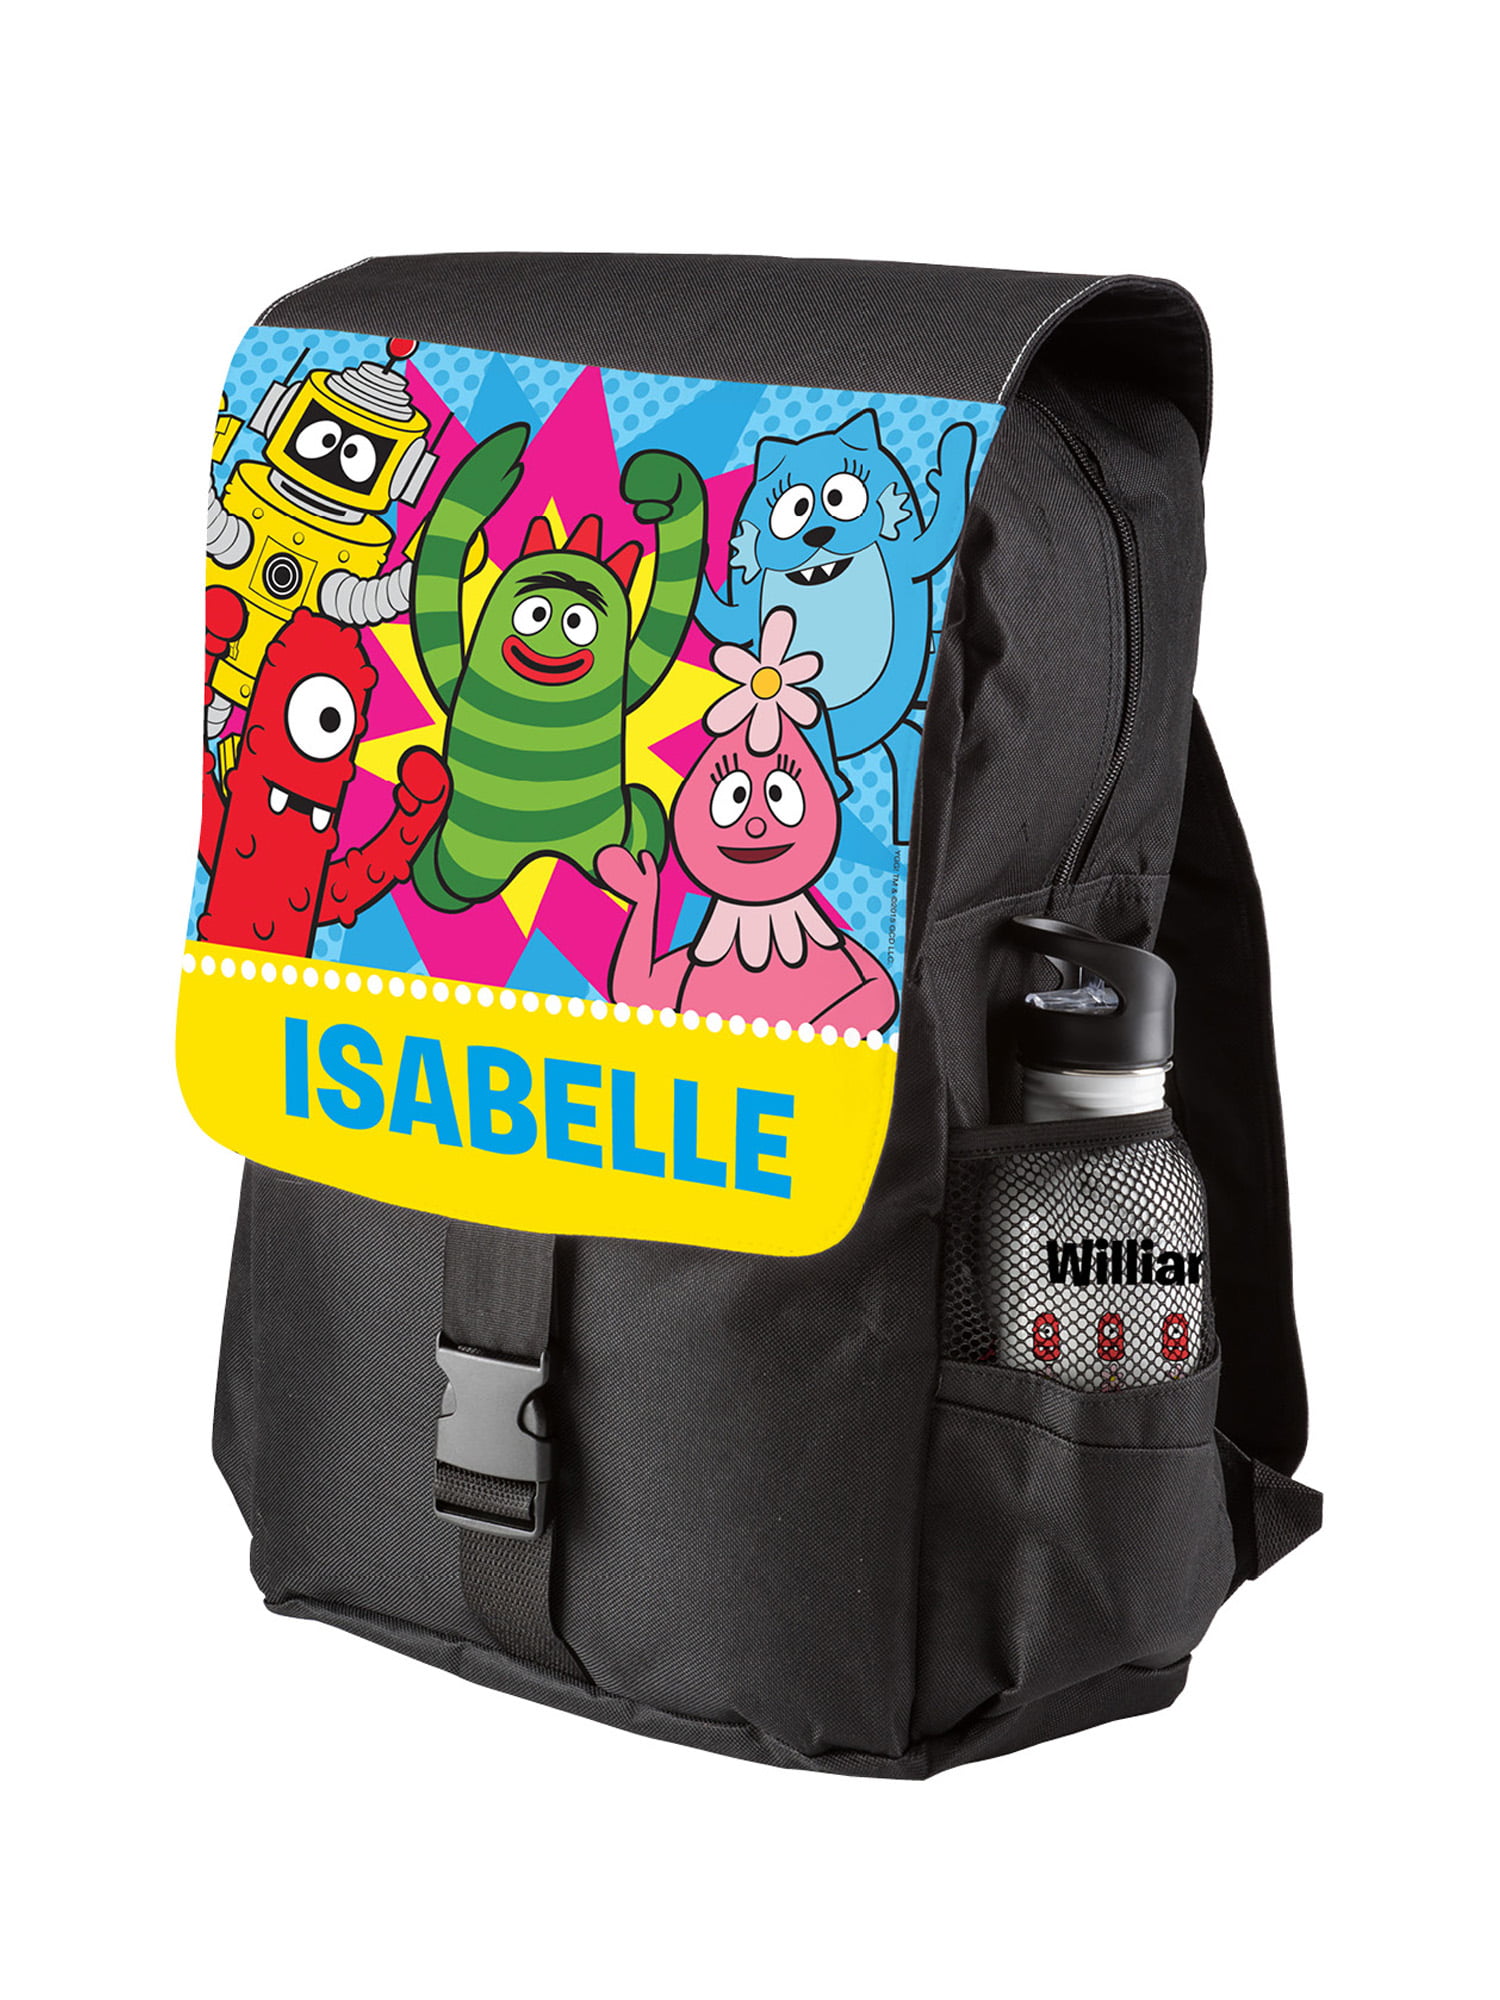 Brobee Backpacks for Sale